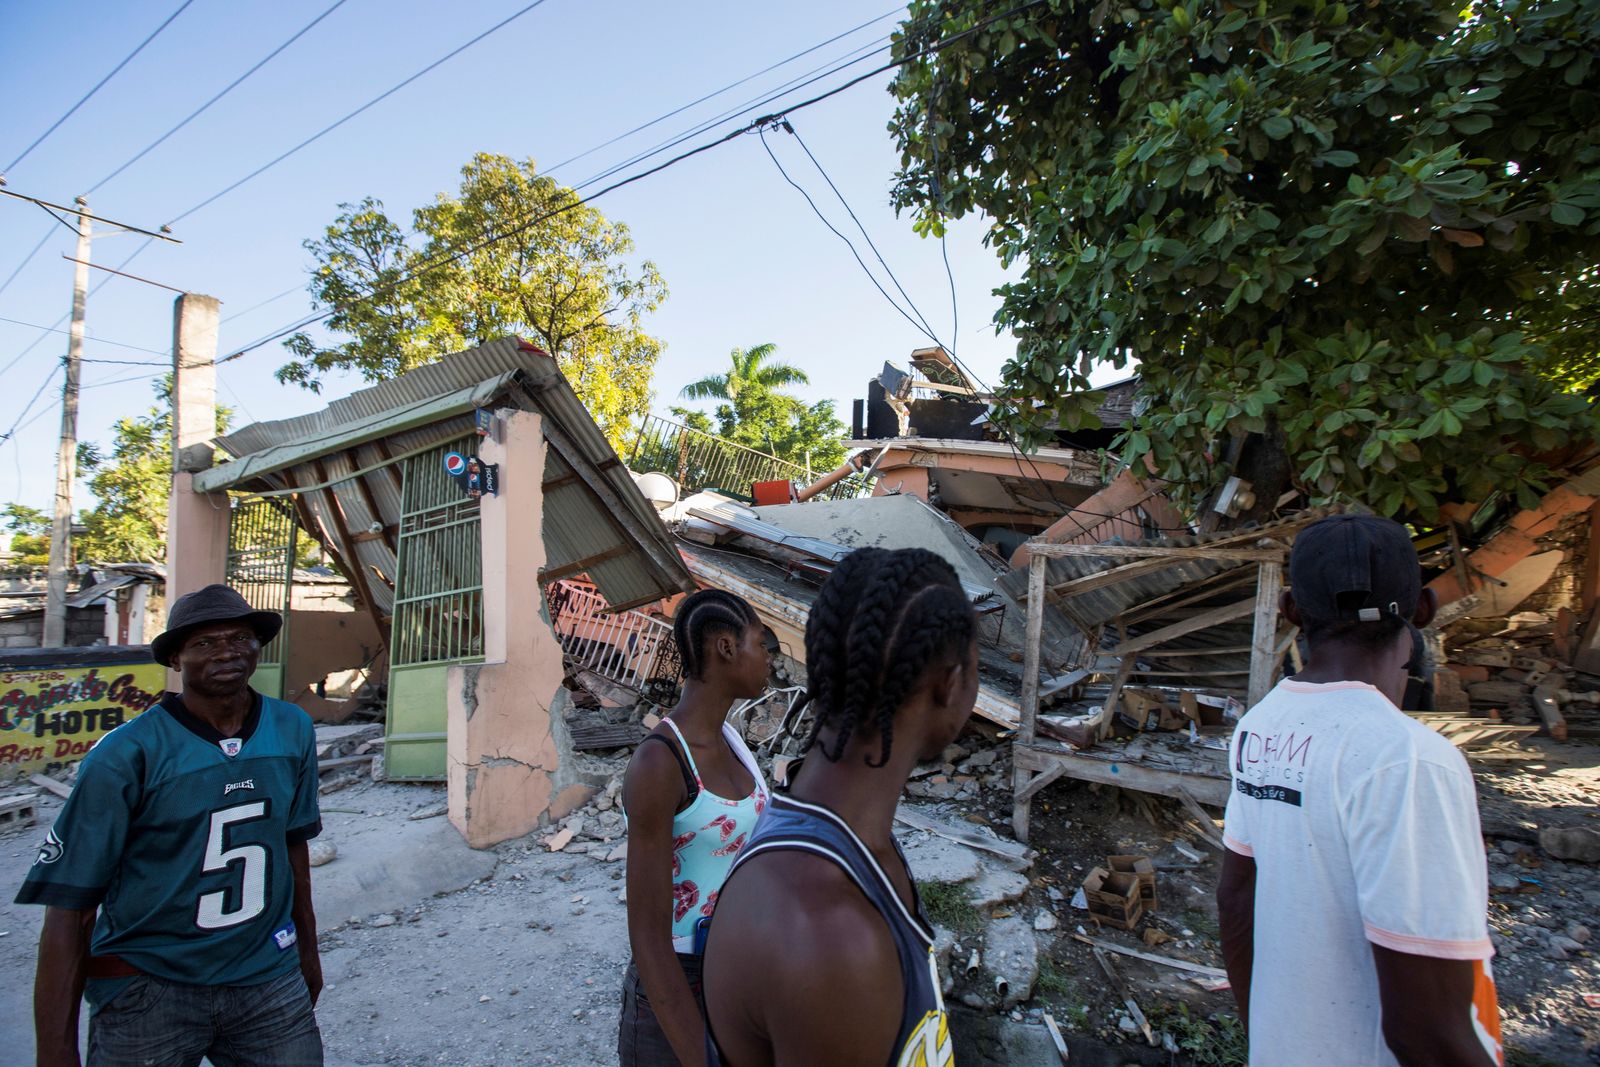  أشخاص يمشون بجوار منزل دُمر في أعقاب الزلزال، هايتي. 14 أغسطس 2021. - REUTERS